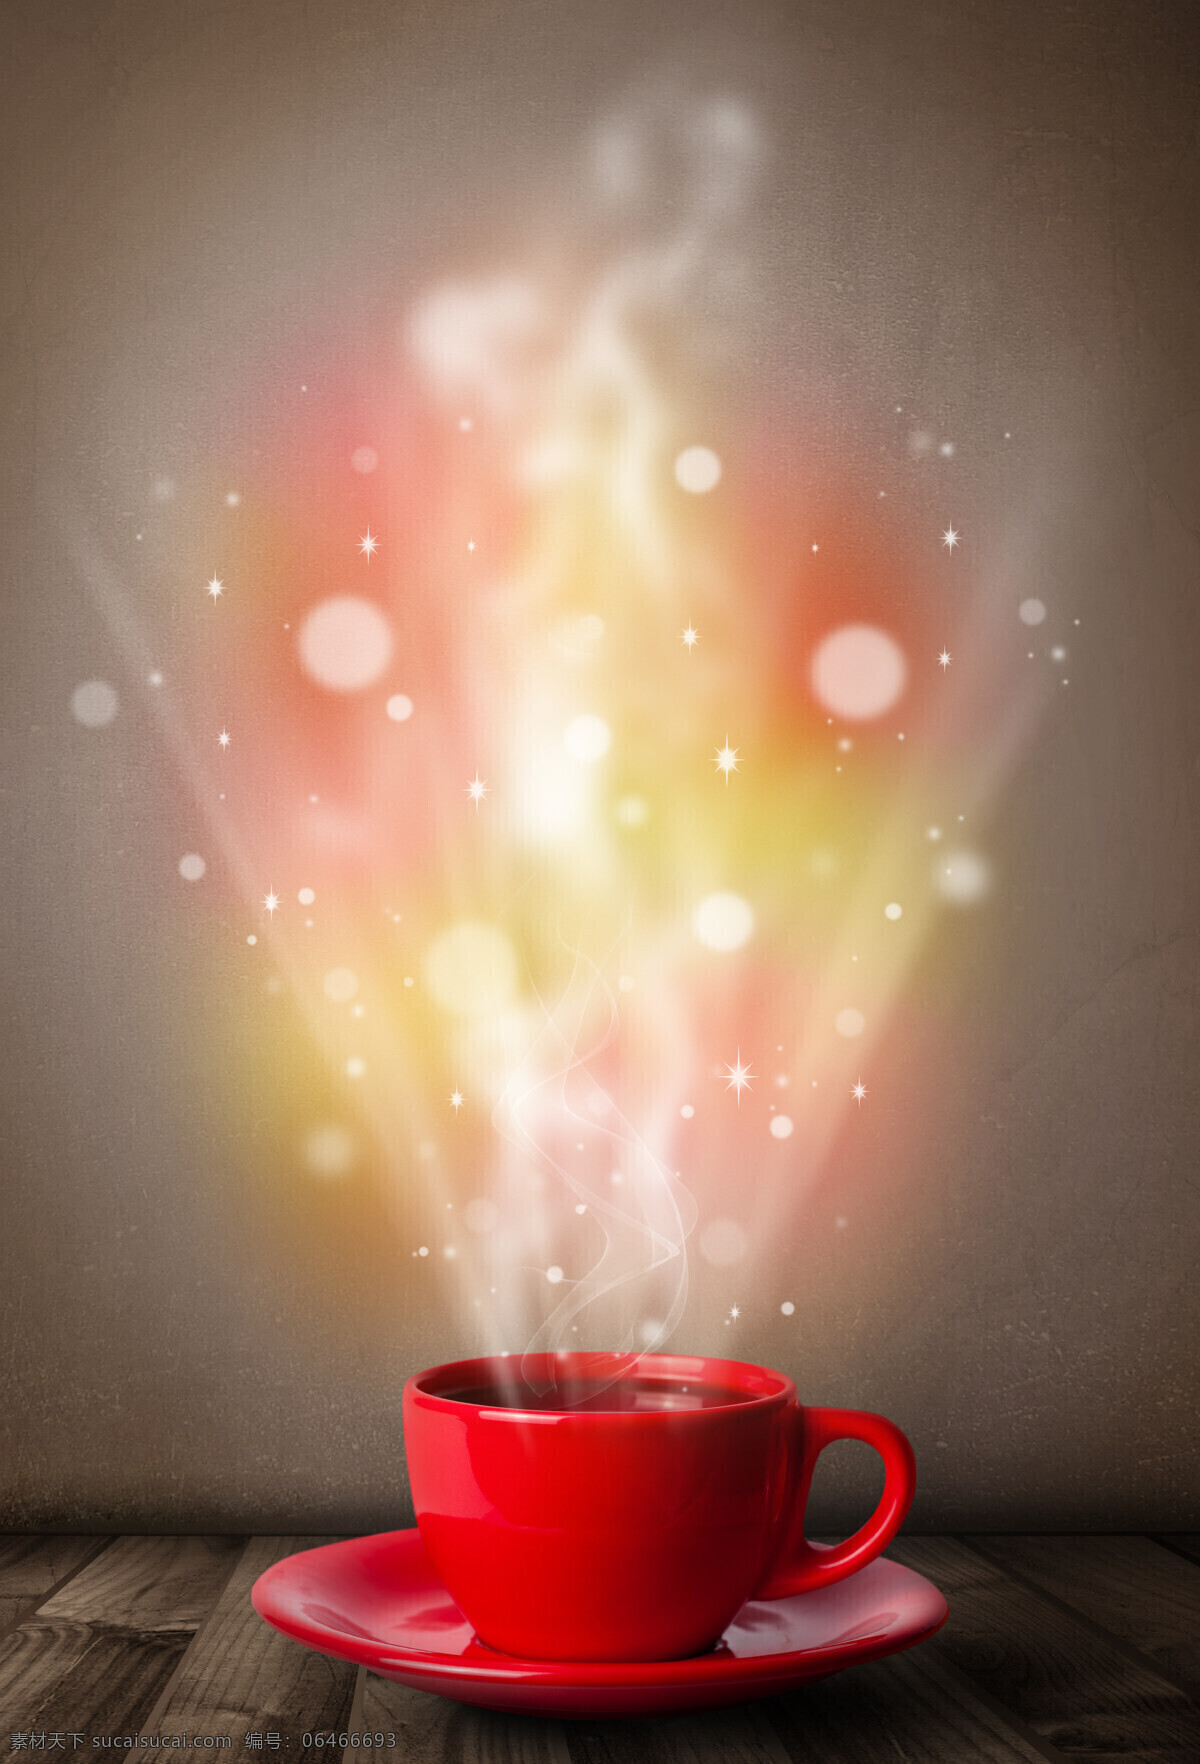 红色 咖啡杯 里 散 发出 星光 咖啡 红色咖啡杯 木板 热气 斑点 光斑 咖啡图片 餐饮美食